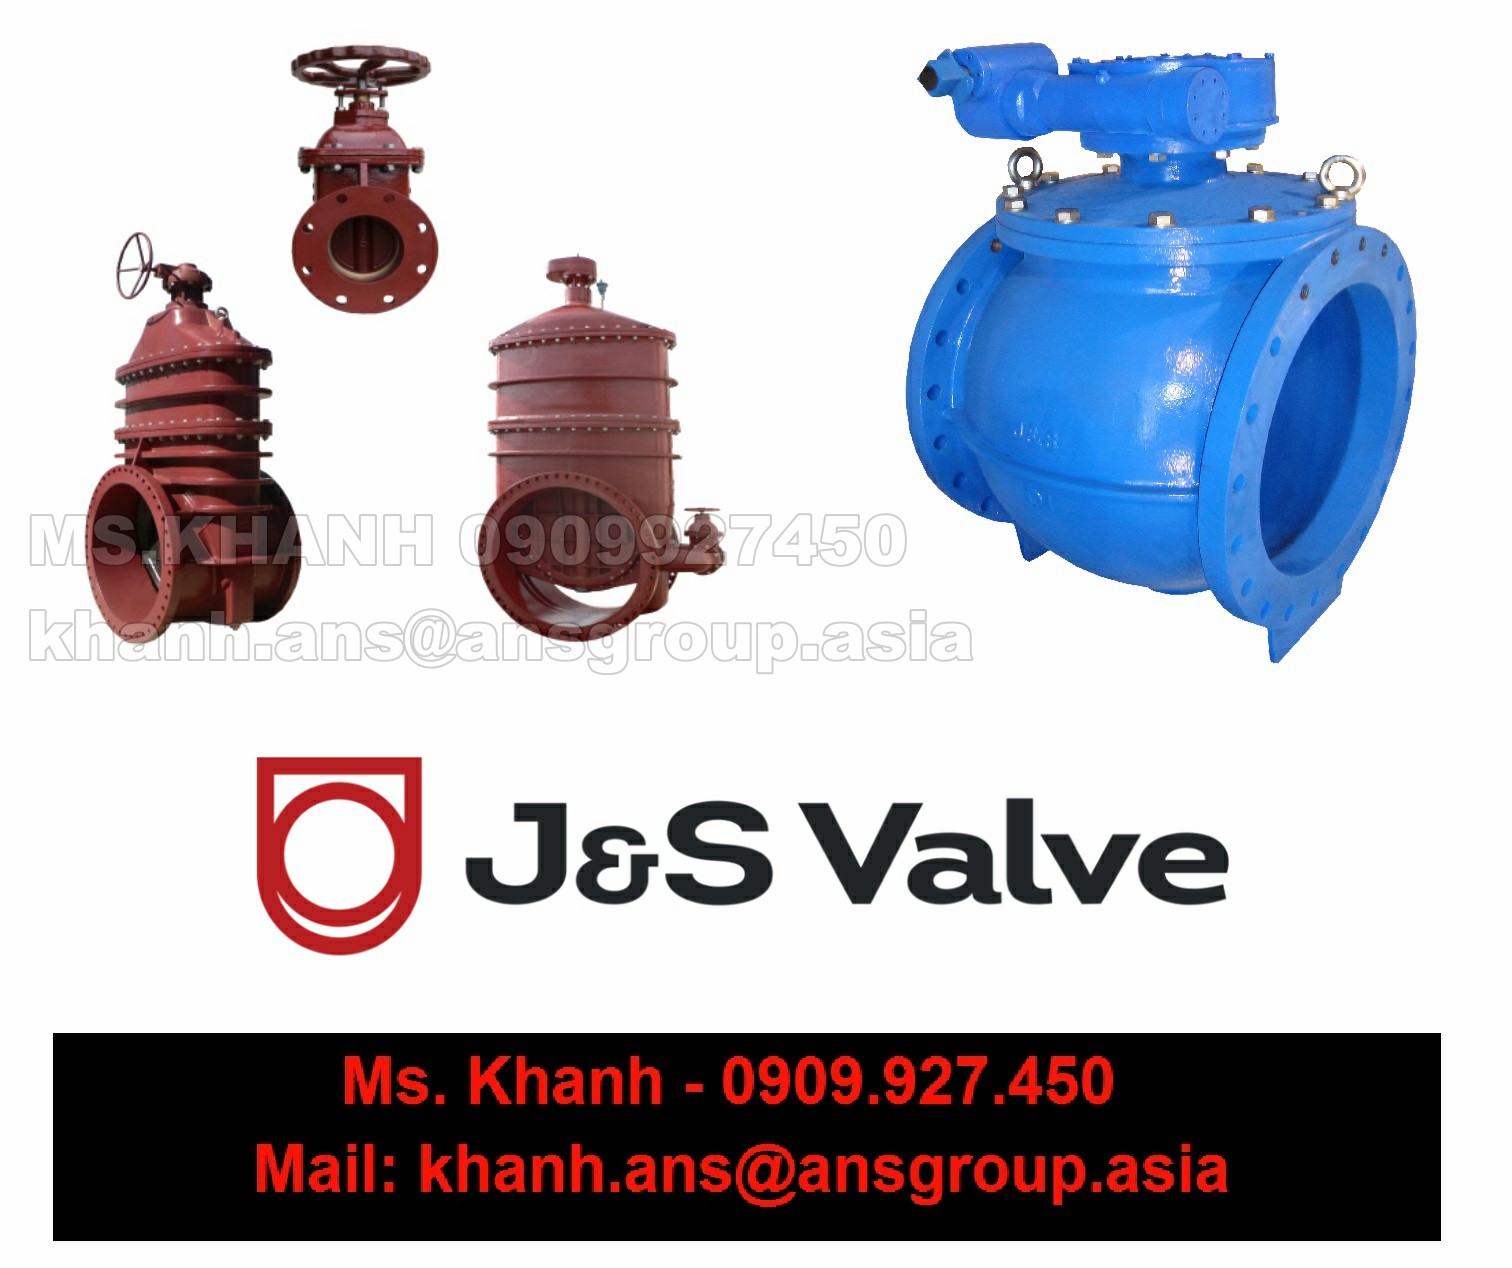 van-h44t-10-dn40-js-valve-vietnam.png